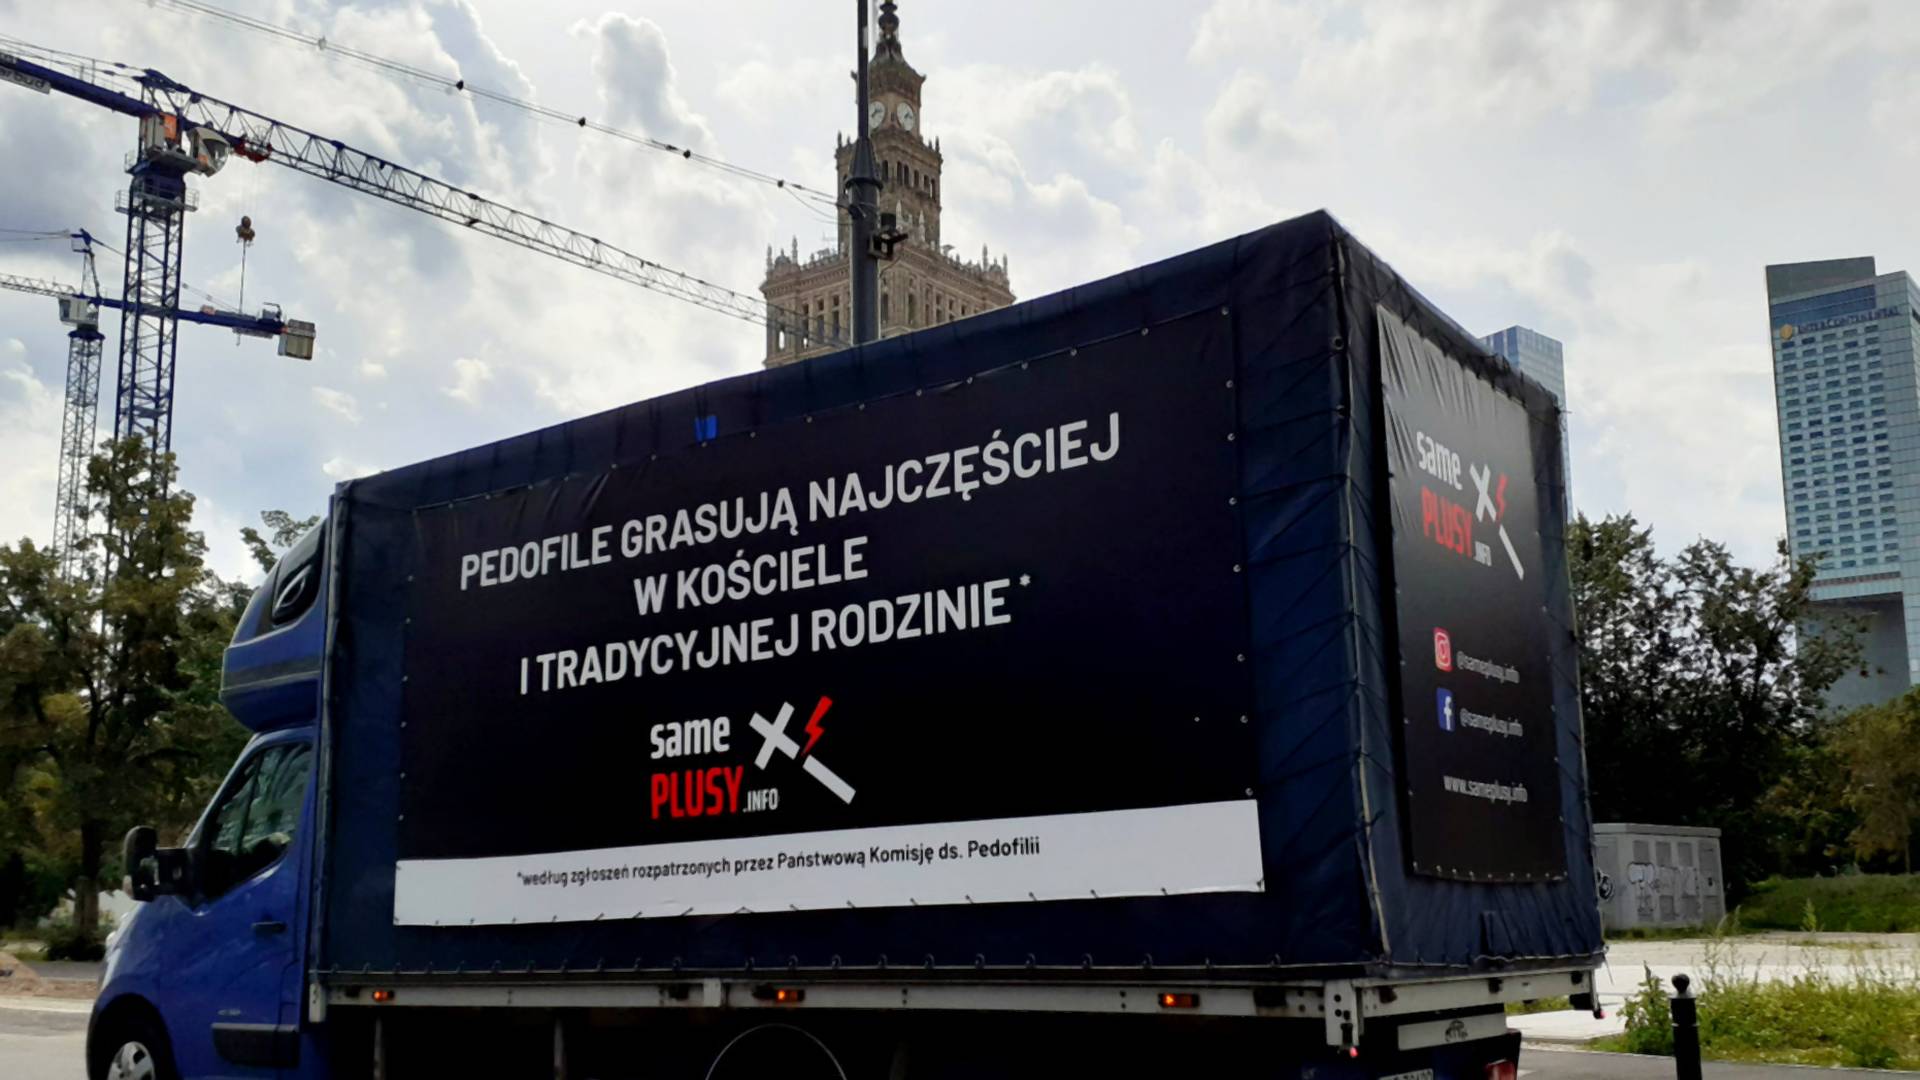 Antyhomofobus już na ulicach Warszawy. "Pedofilia nie ma nic wspólnego z homoseksualnością"